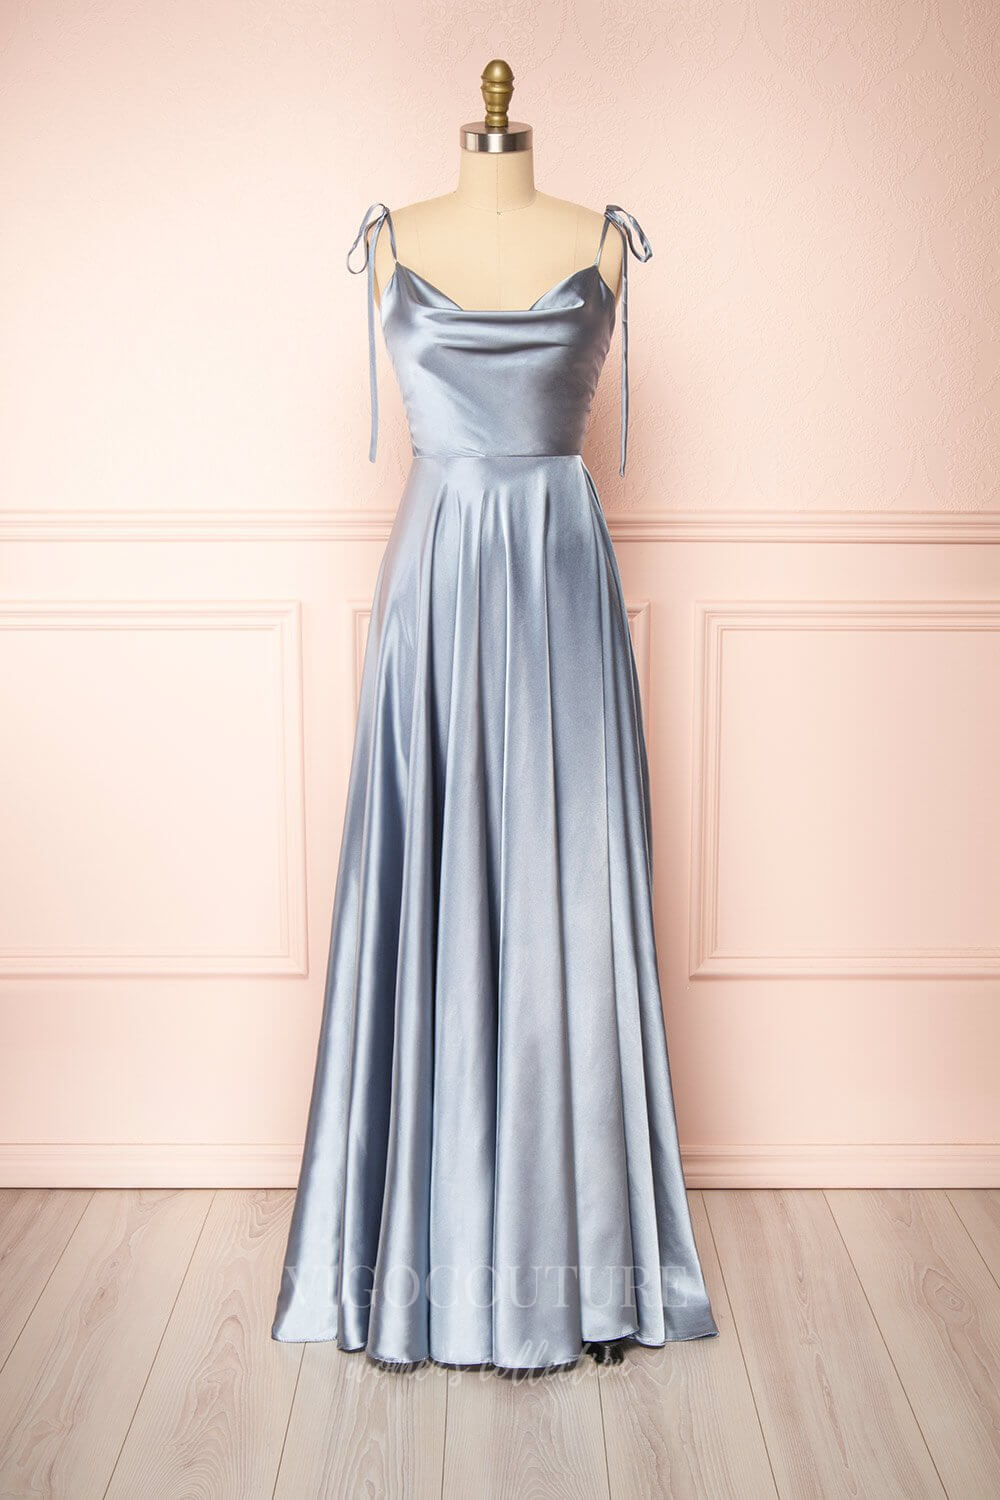 vigocouture-Burgundy Spaghetti Strap Prom Dress 20576-Prom Dresses-vigocouture-Silver-US2-